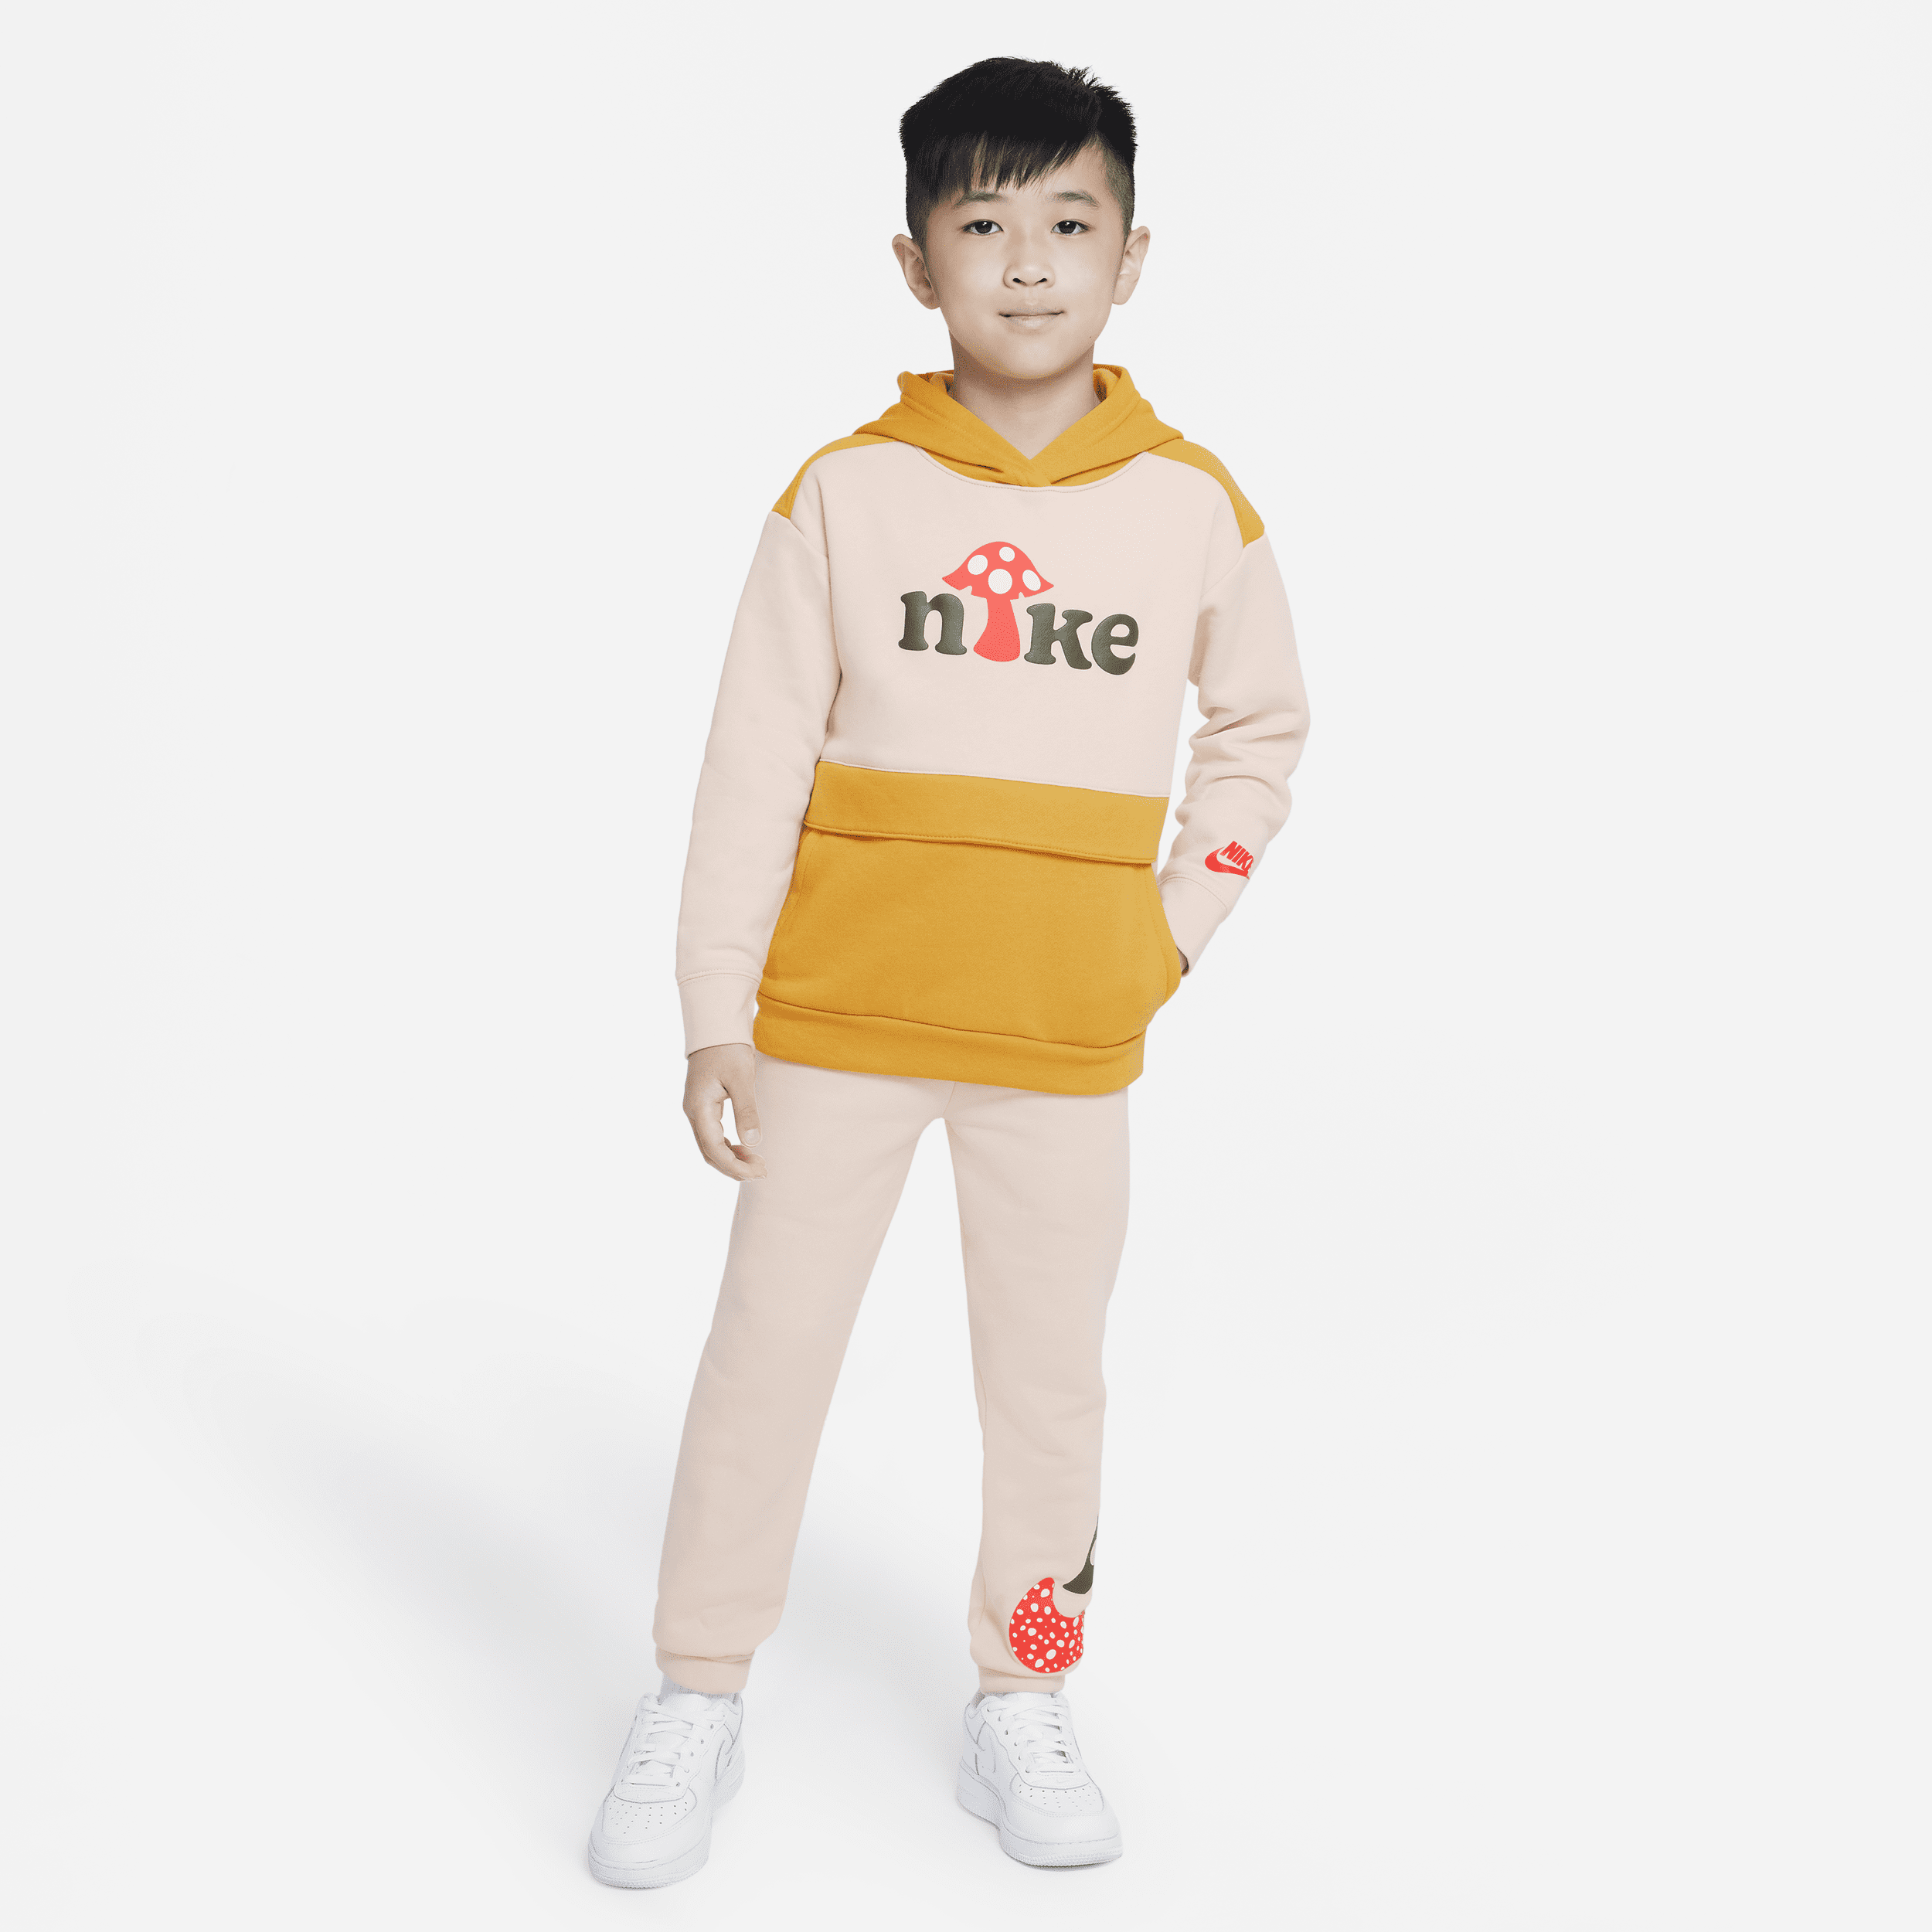 Completo pullover in blocchi di colore Nike – Bambino/a - Bianco